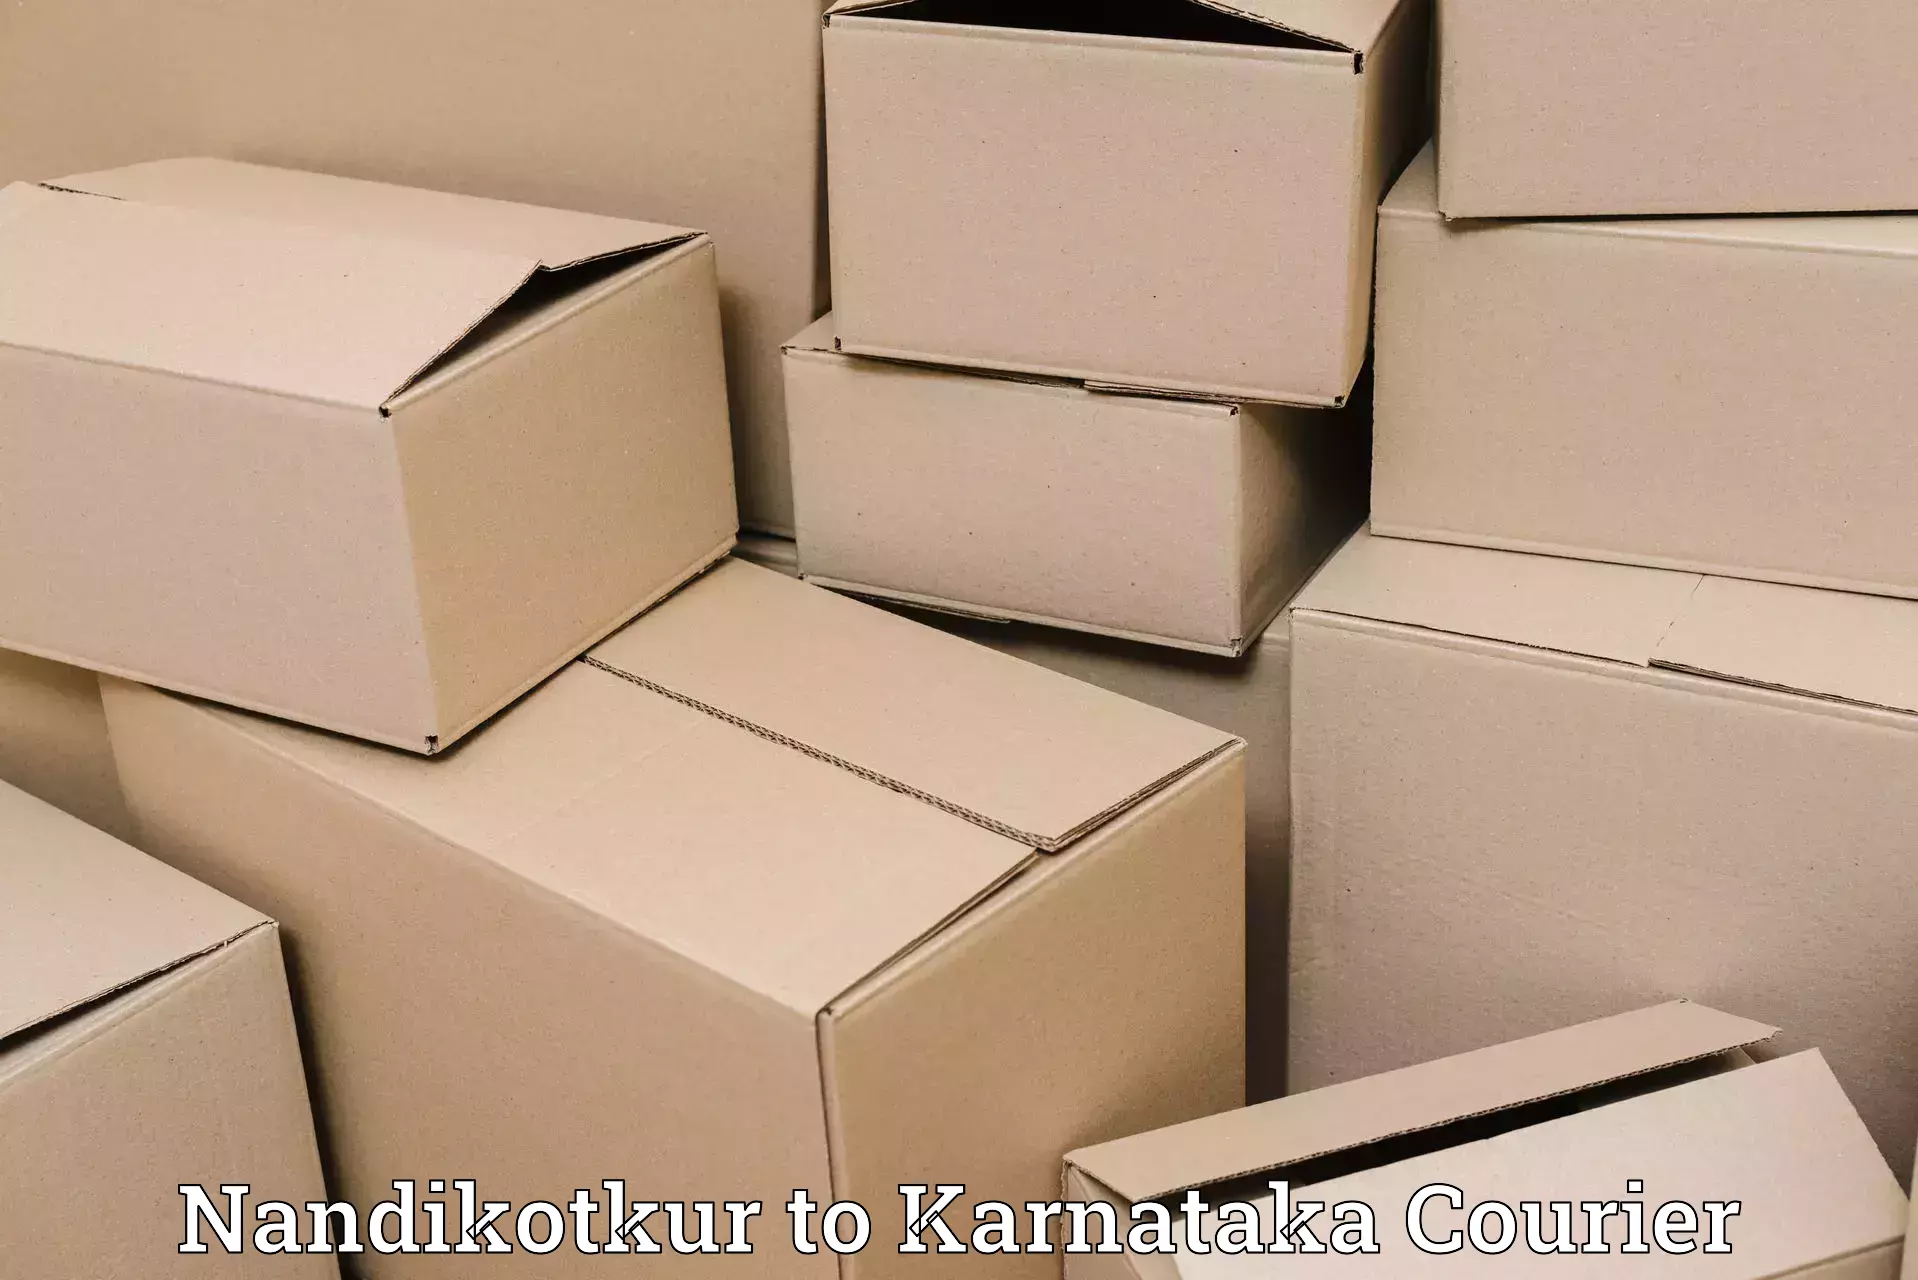 Tech-enabled shipping Nandikotkur to Hoovina Hadagali